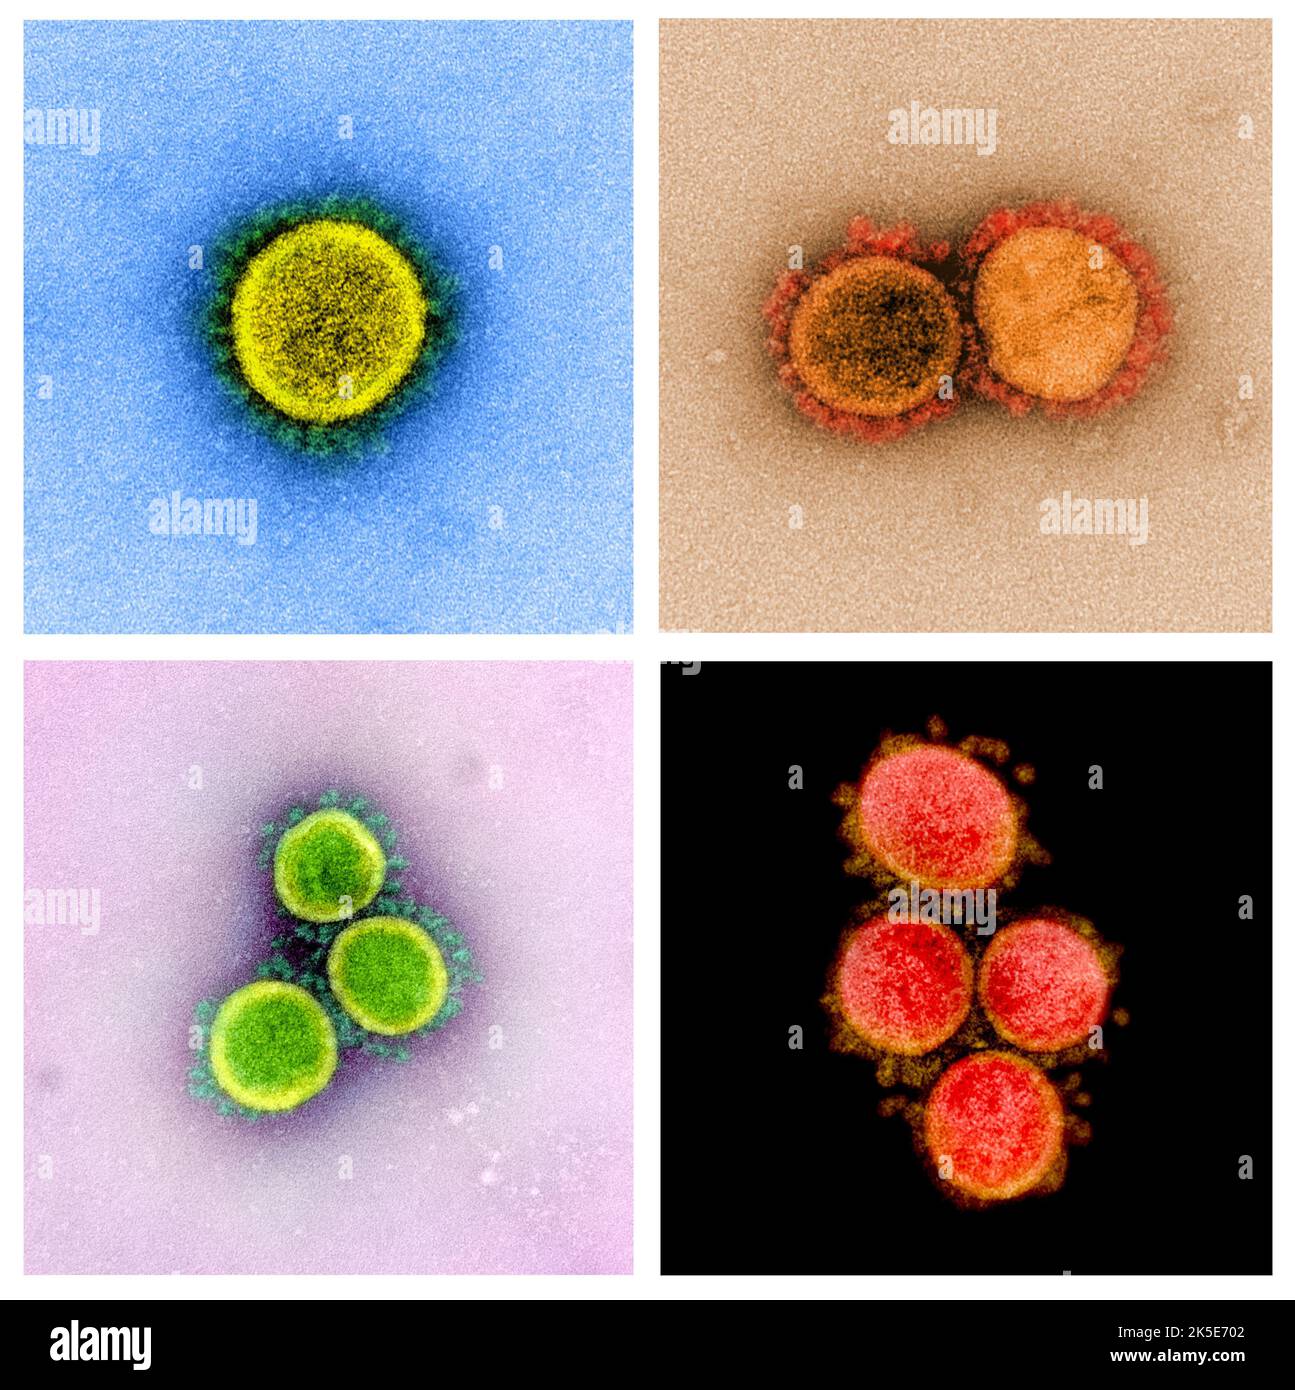 Eine Zusammenstellung von Bildern des neuartigen Coronavirus SARS-CoV-2. Transmissions-Elektronenmikrographie eines SARS-CoV-2-Virus-Partikels, isoliert von einem Patienten. Eine optimierte und verbesserte, einzigartige Composite-Version von vier Rasterelektronenmikrographen-Bildern, Quelle: NIAID Stockfoto